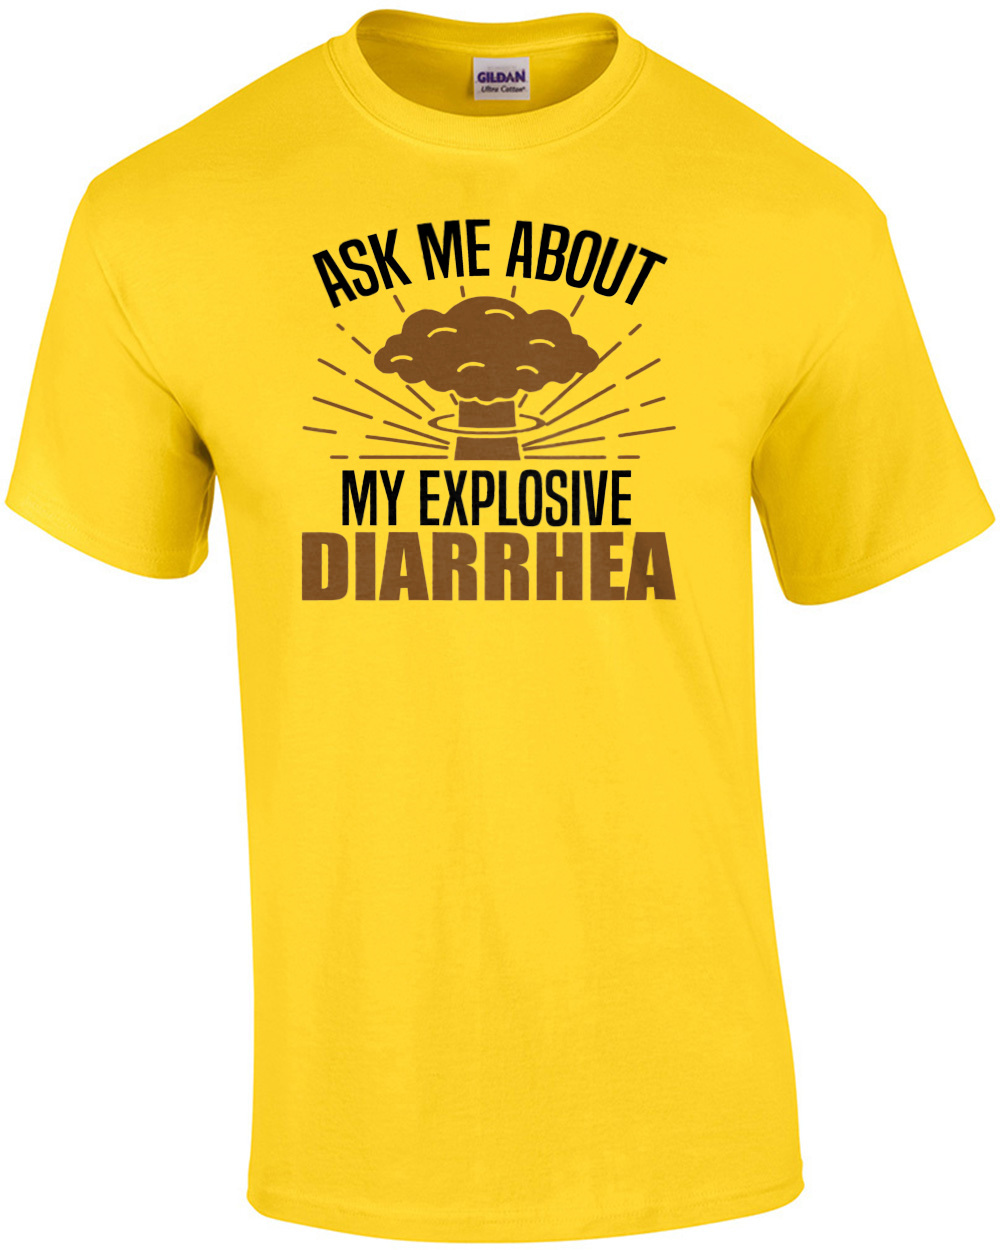 projectile diarrhea